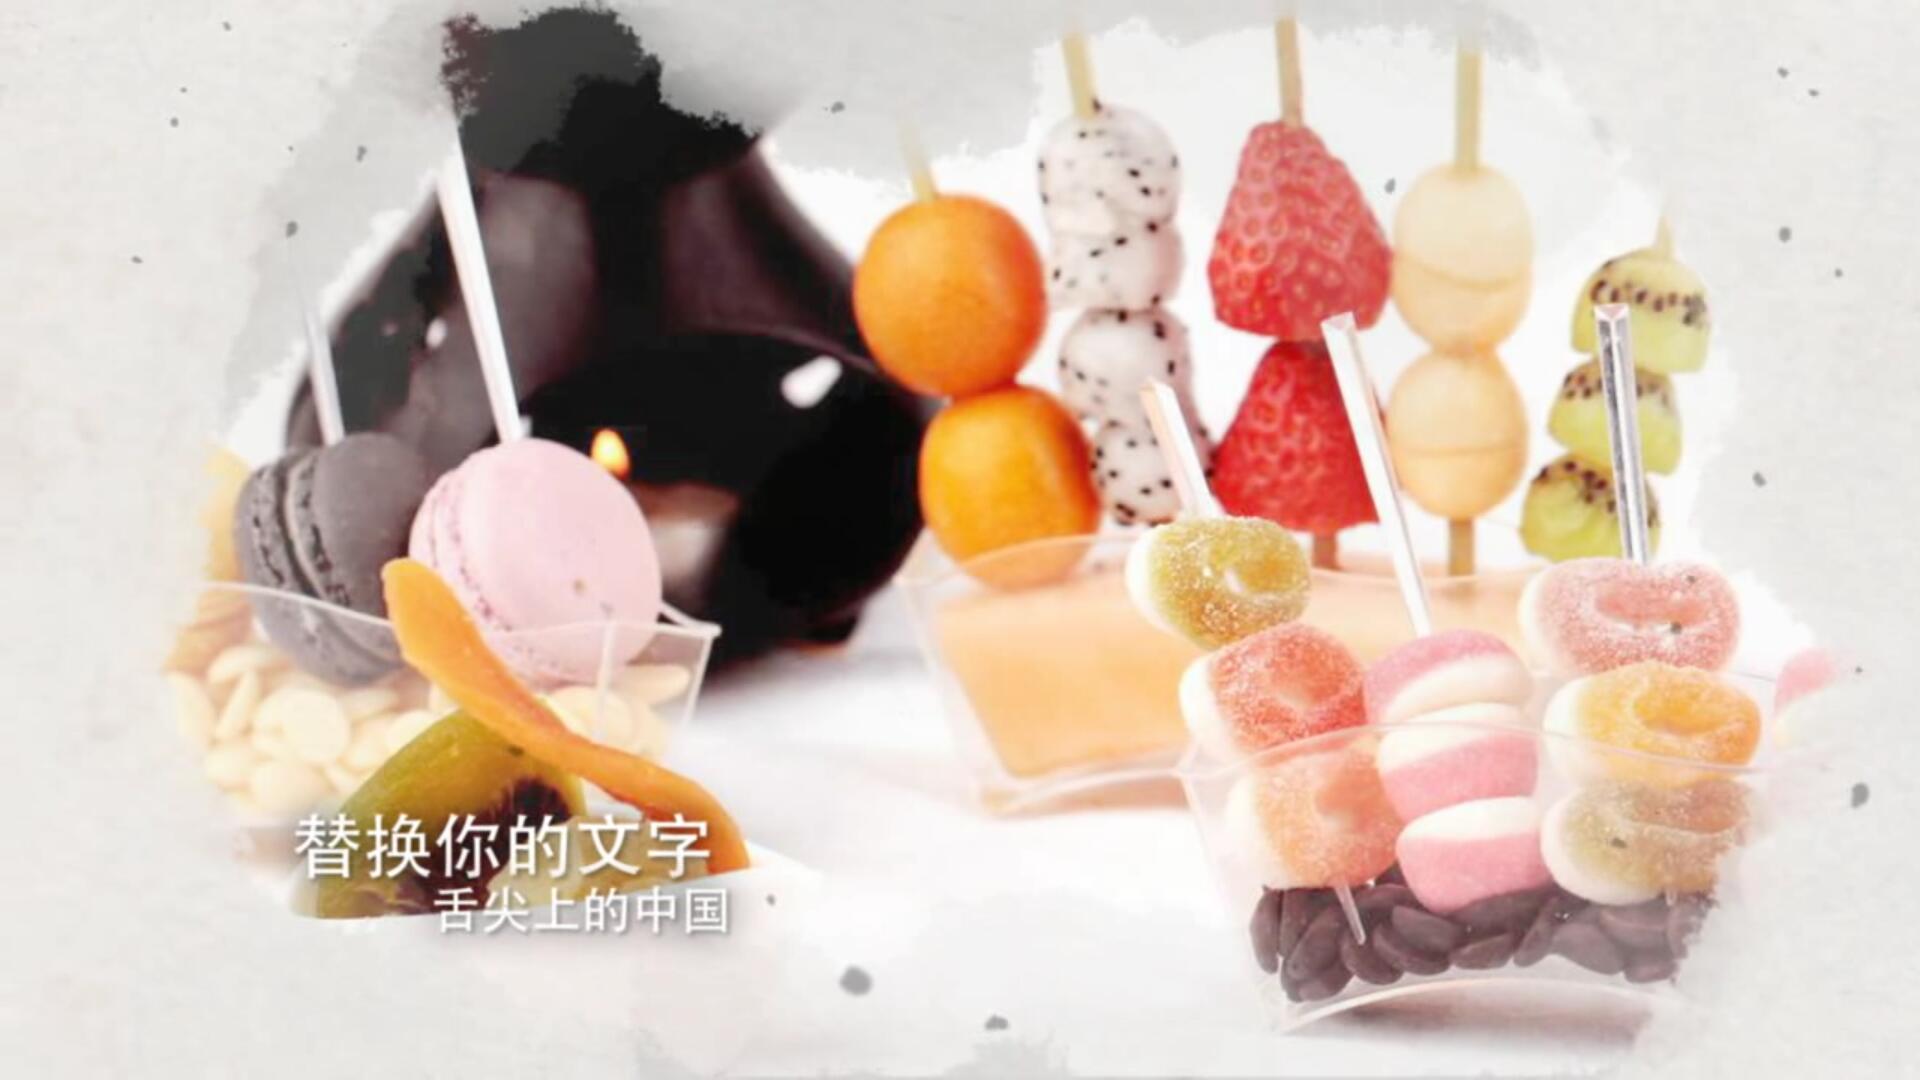 舌尖上的中国之美食栏目节目包装AE模板